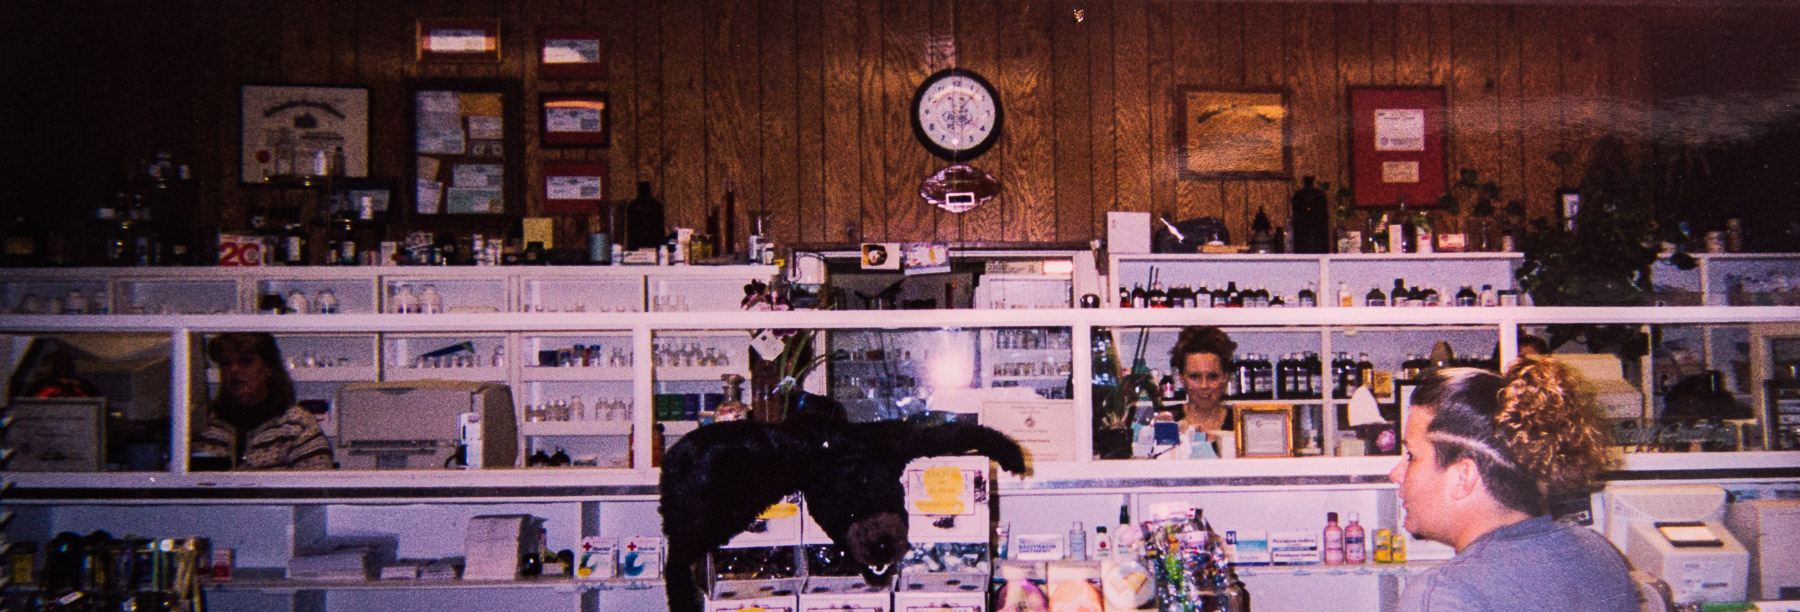 Elmore Pharmacy History-1990's Photo?